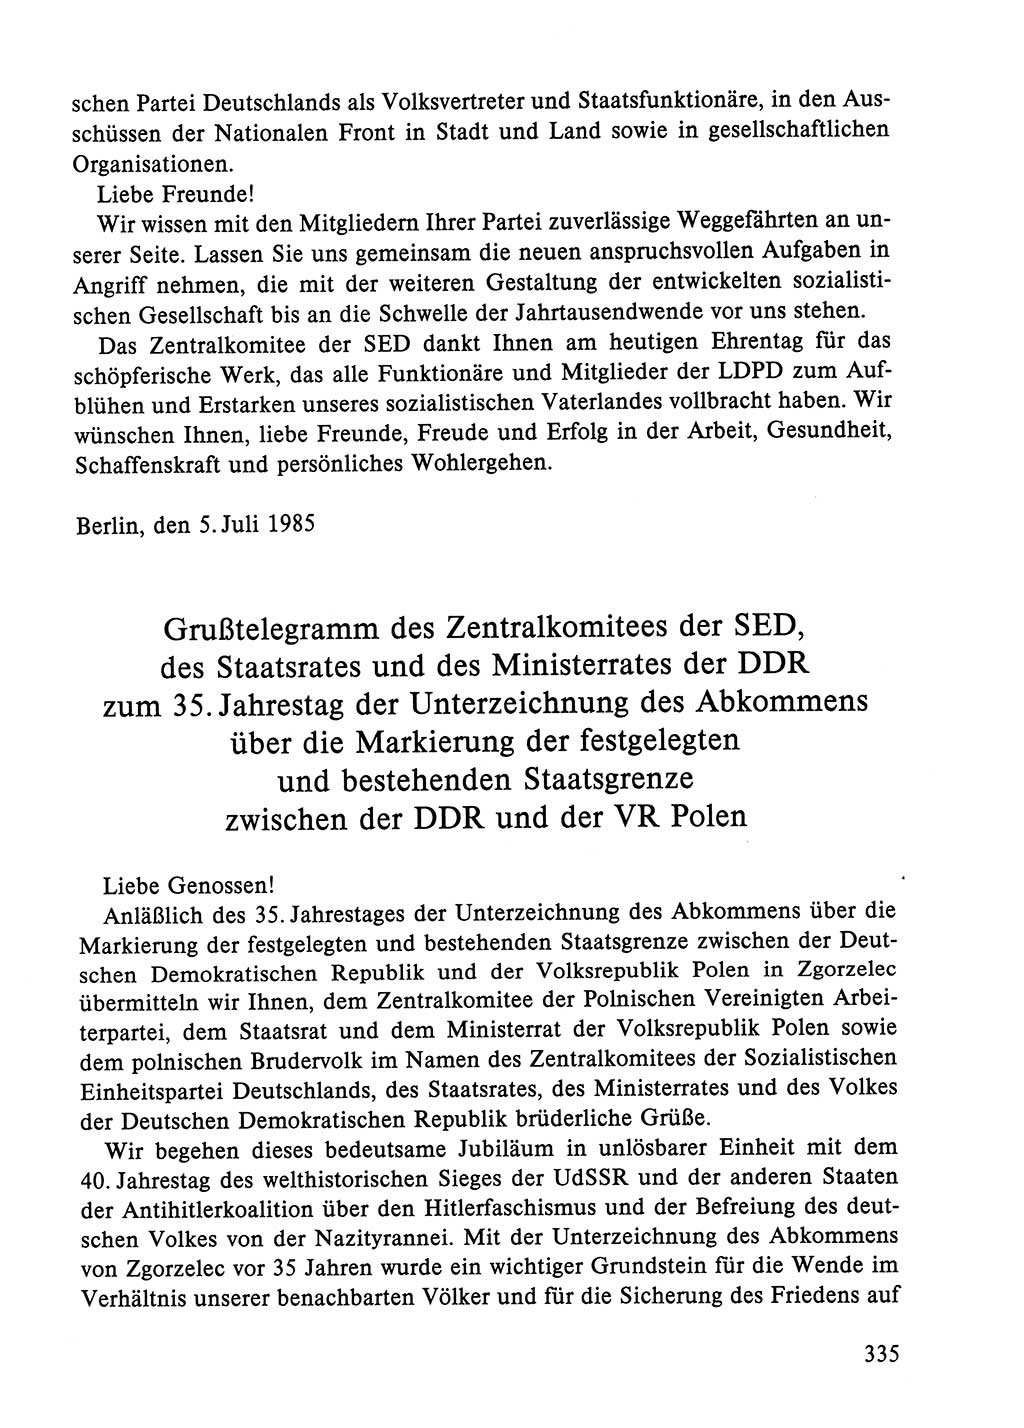 Dokumente der Sozialistischen Einheitspartei Deutschlands (SED) [Deutsche Demokratische Republik (DDR)] 1984-1985, Seite 335 (Dok. SED DDR 1984-1985, S. 335)